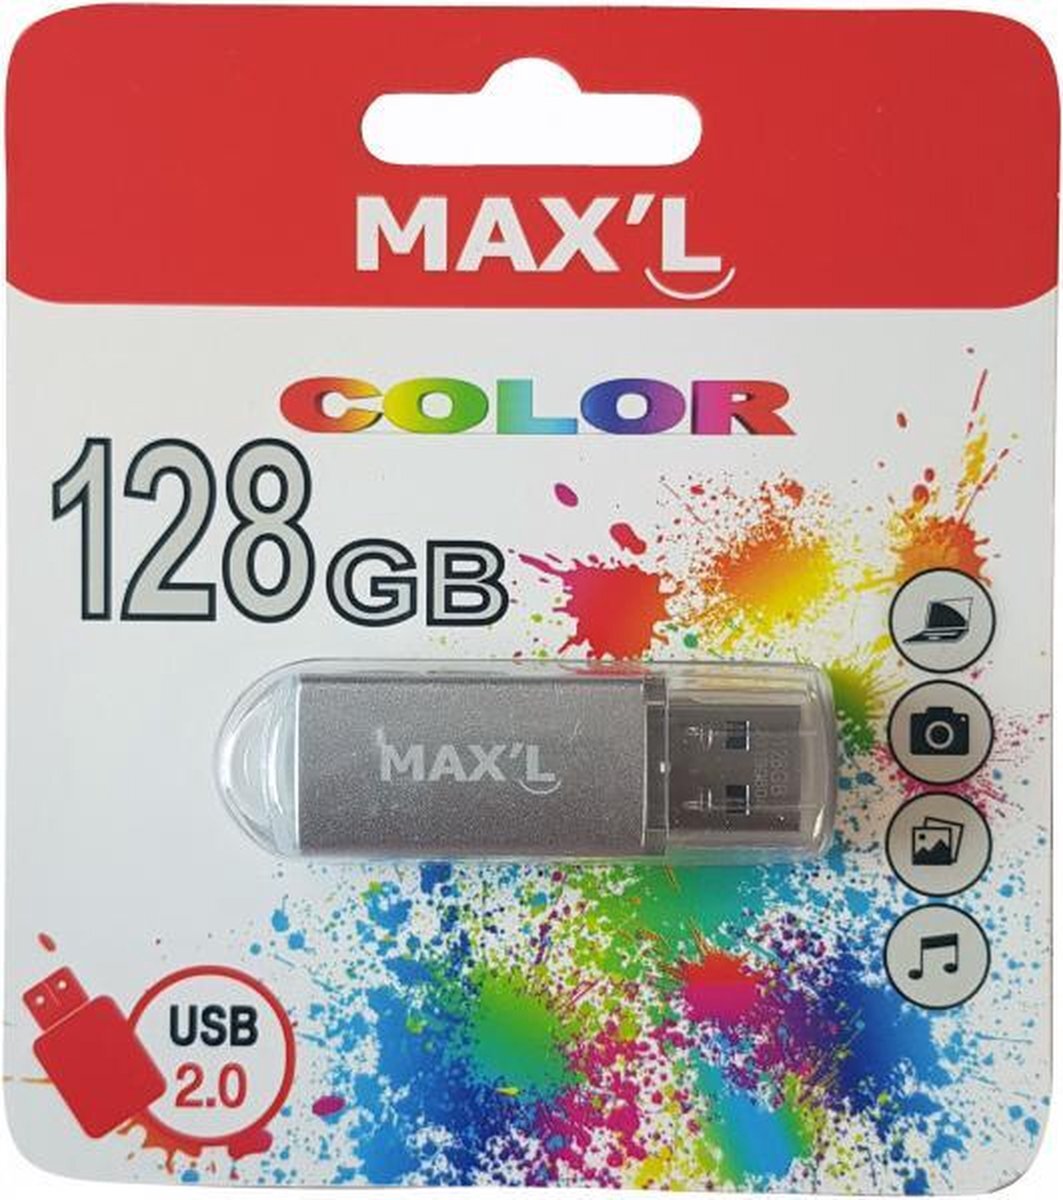 MAX'L Color USB 2.0 128GB